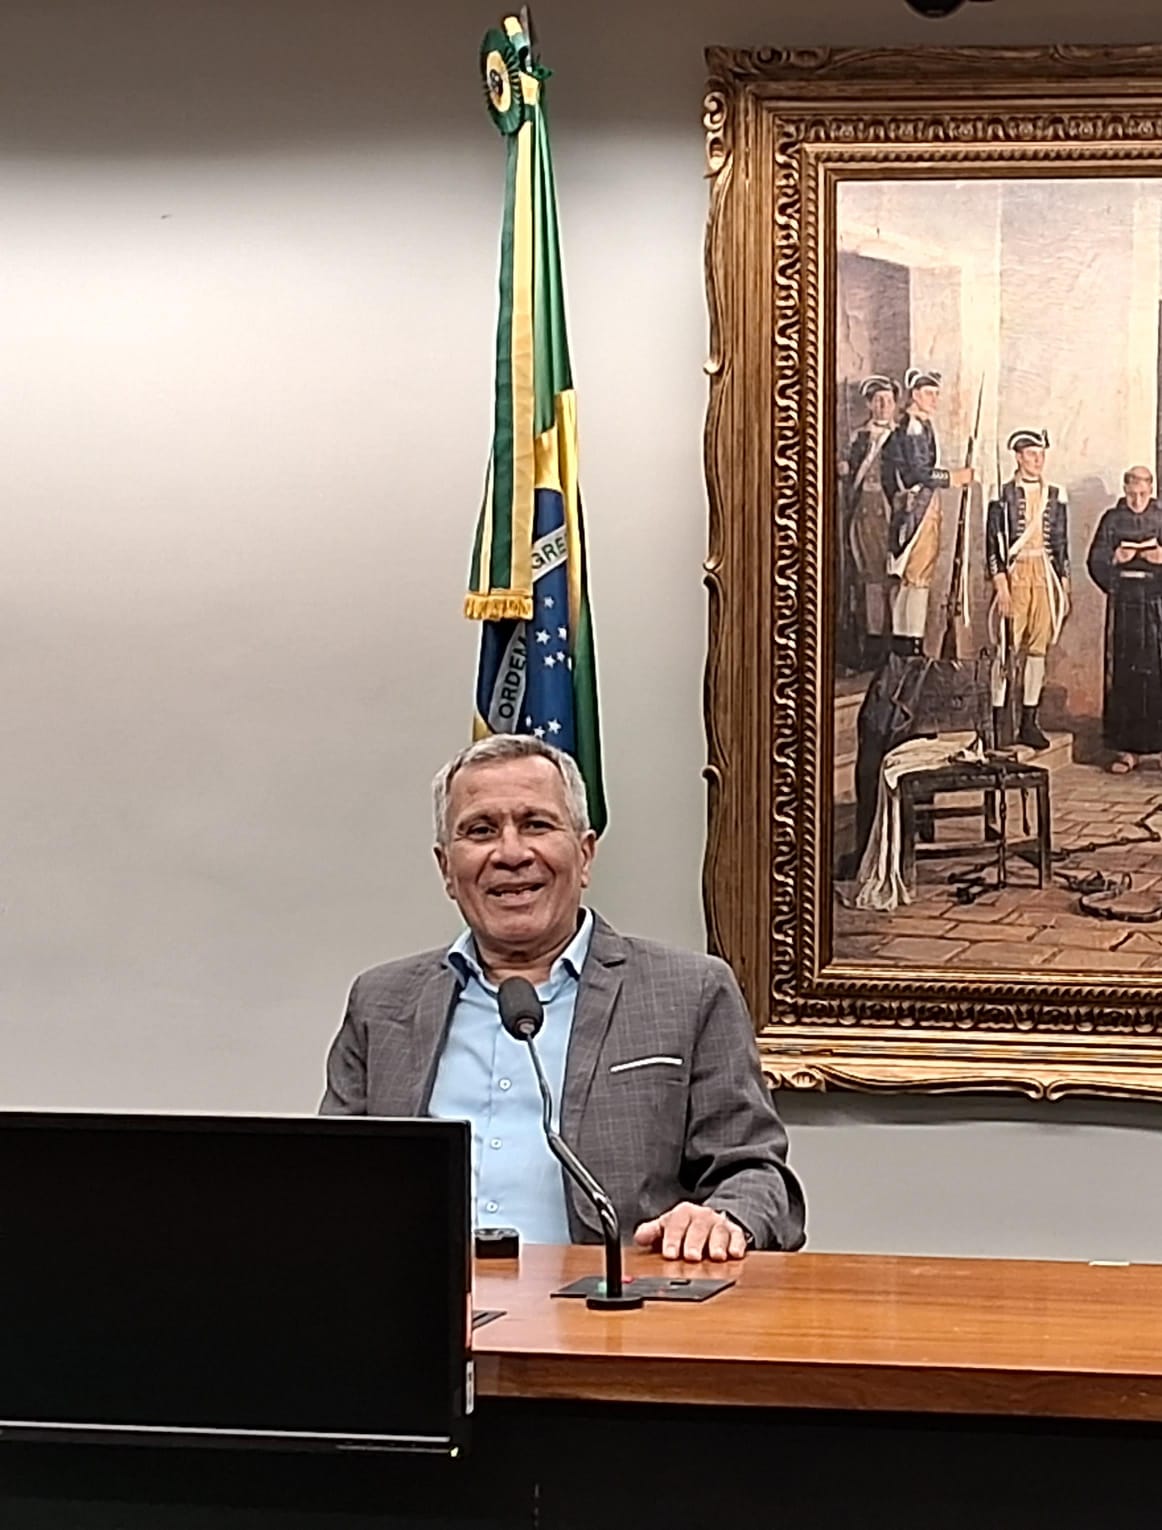 JORNALISTA DONIZETTI DE SOUZA VIAJA ATÉ O CORAÇÃO DA POLÍTICA EM BRASÍLIA